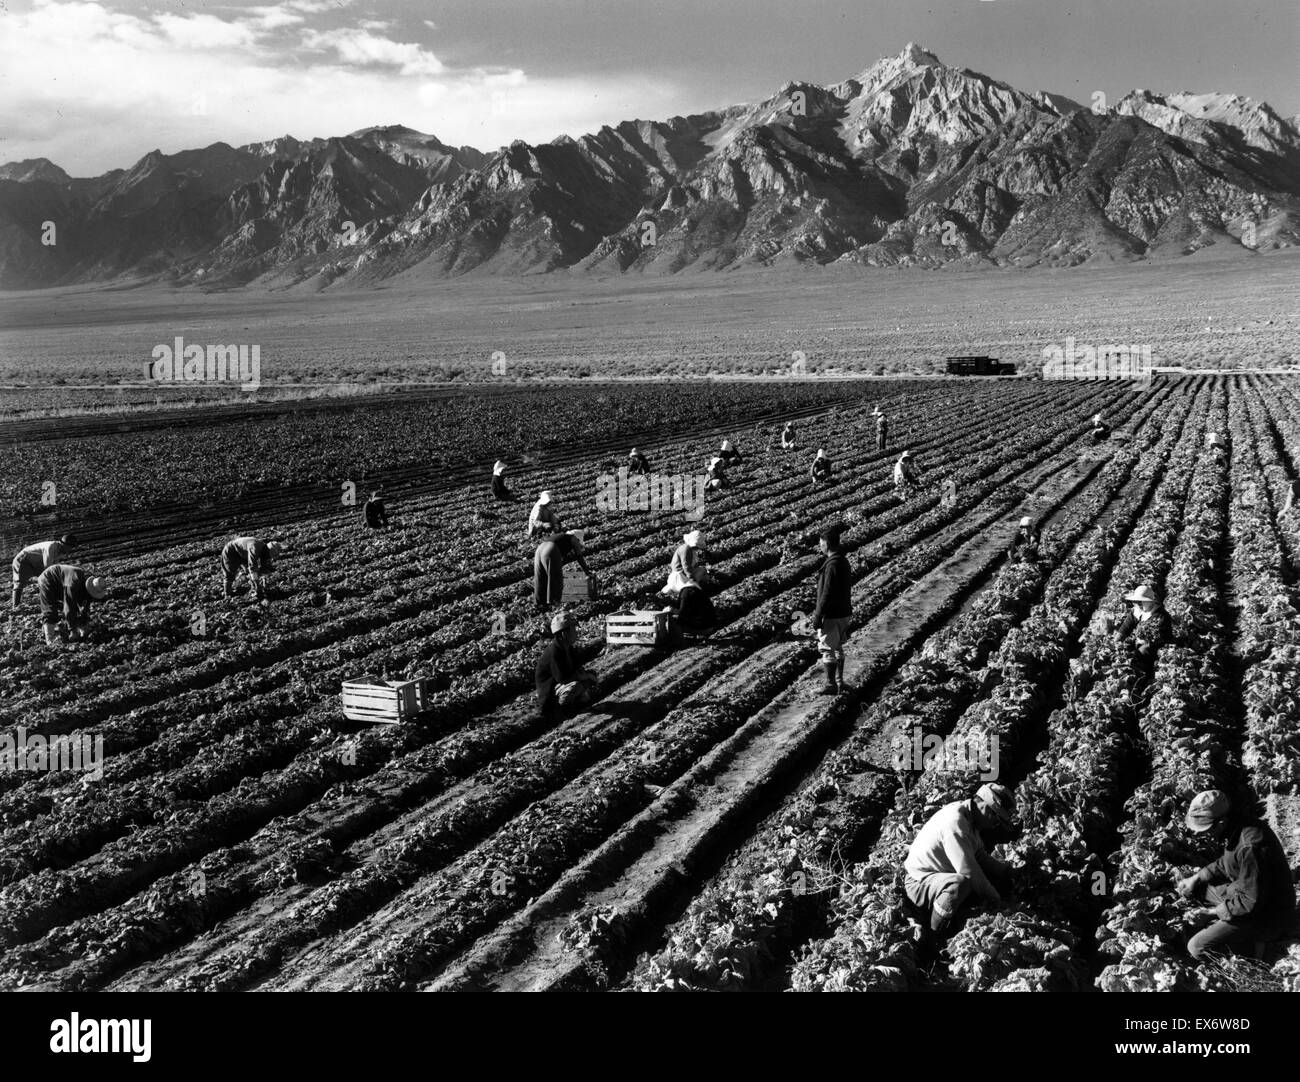 Fotoabzug der Landarbeiter mit Mt. Williamson im Hintergrund, Manzanar Relocation Center. Fotografiert von Ansel Adams (1902-1984), US-amerikanischer Fotograf und Umweltschützer, bekannt für seine schwarz-weiß Landschaftsfotografien von der Ameri Stockfoto